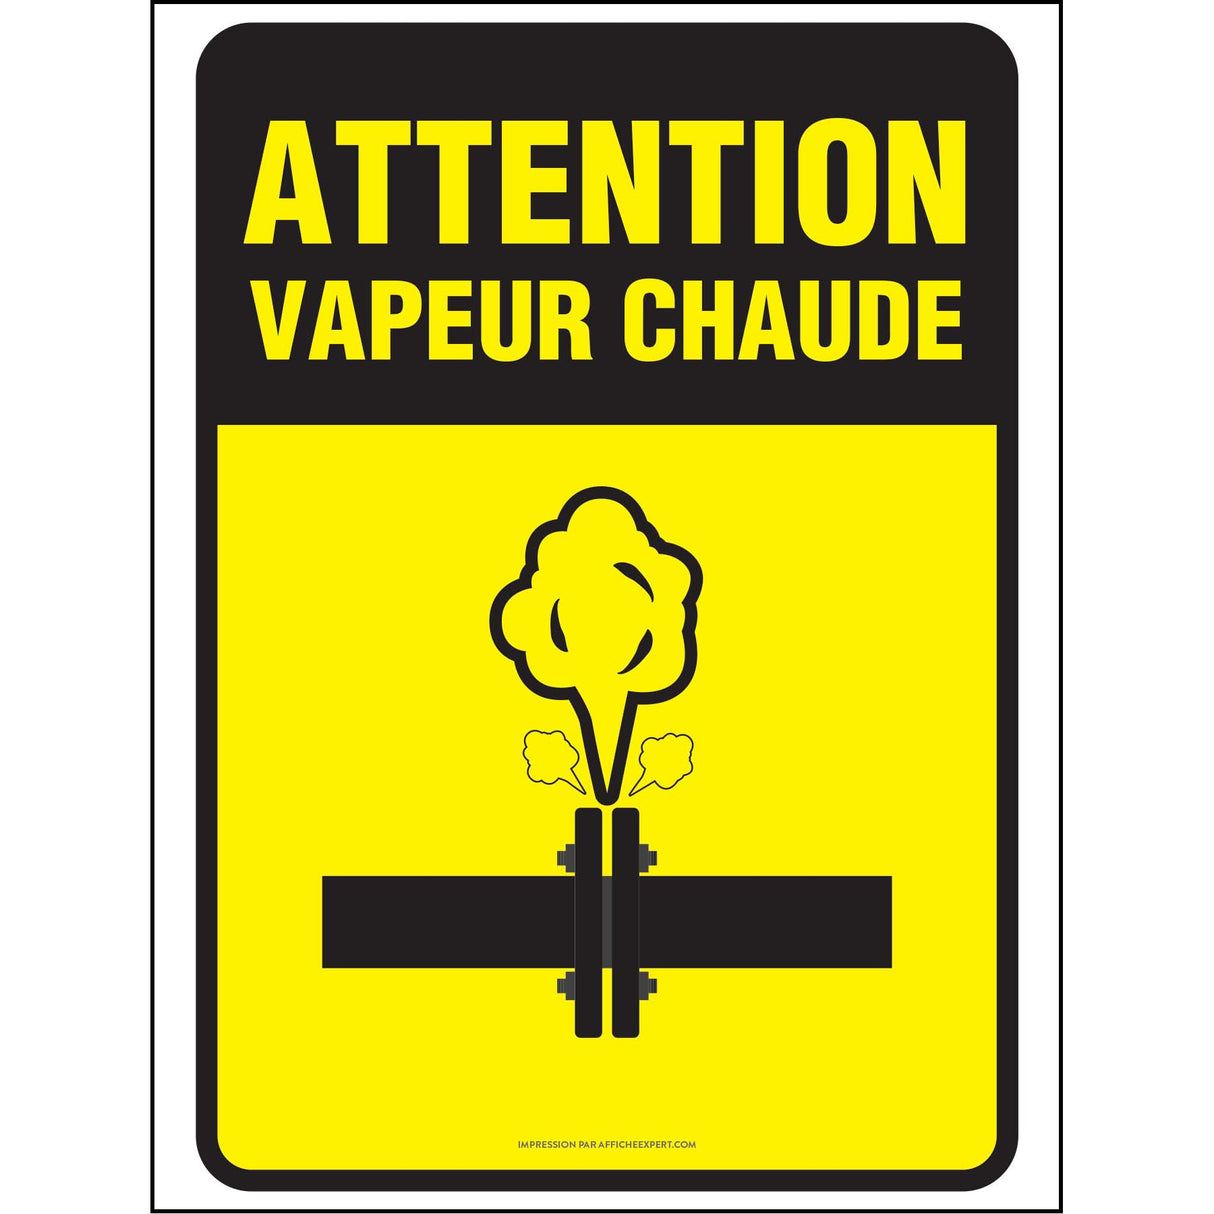 Attention - Vapeur chaude